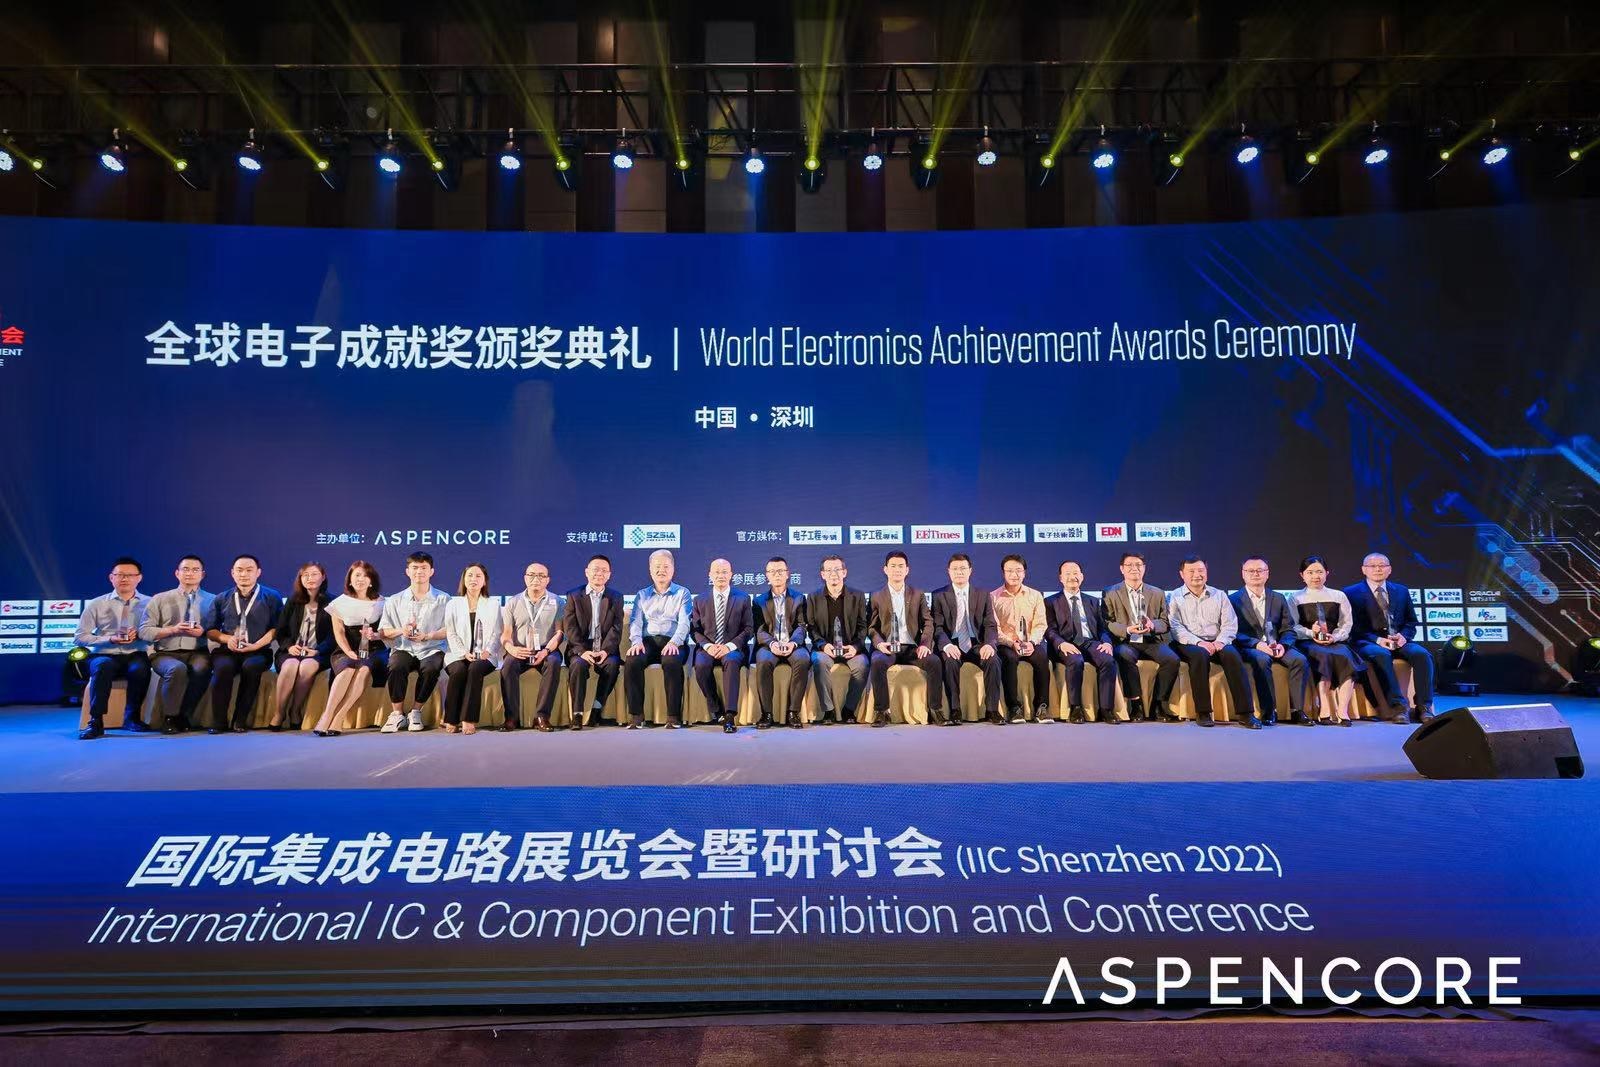 国际集成电路展览会暨研讨会（IIC Shenzhen 2022）盛大开幕